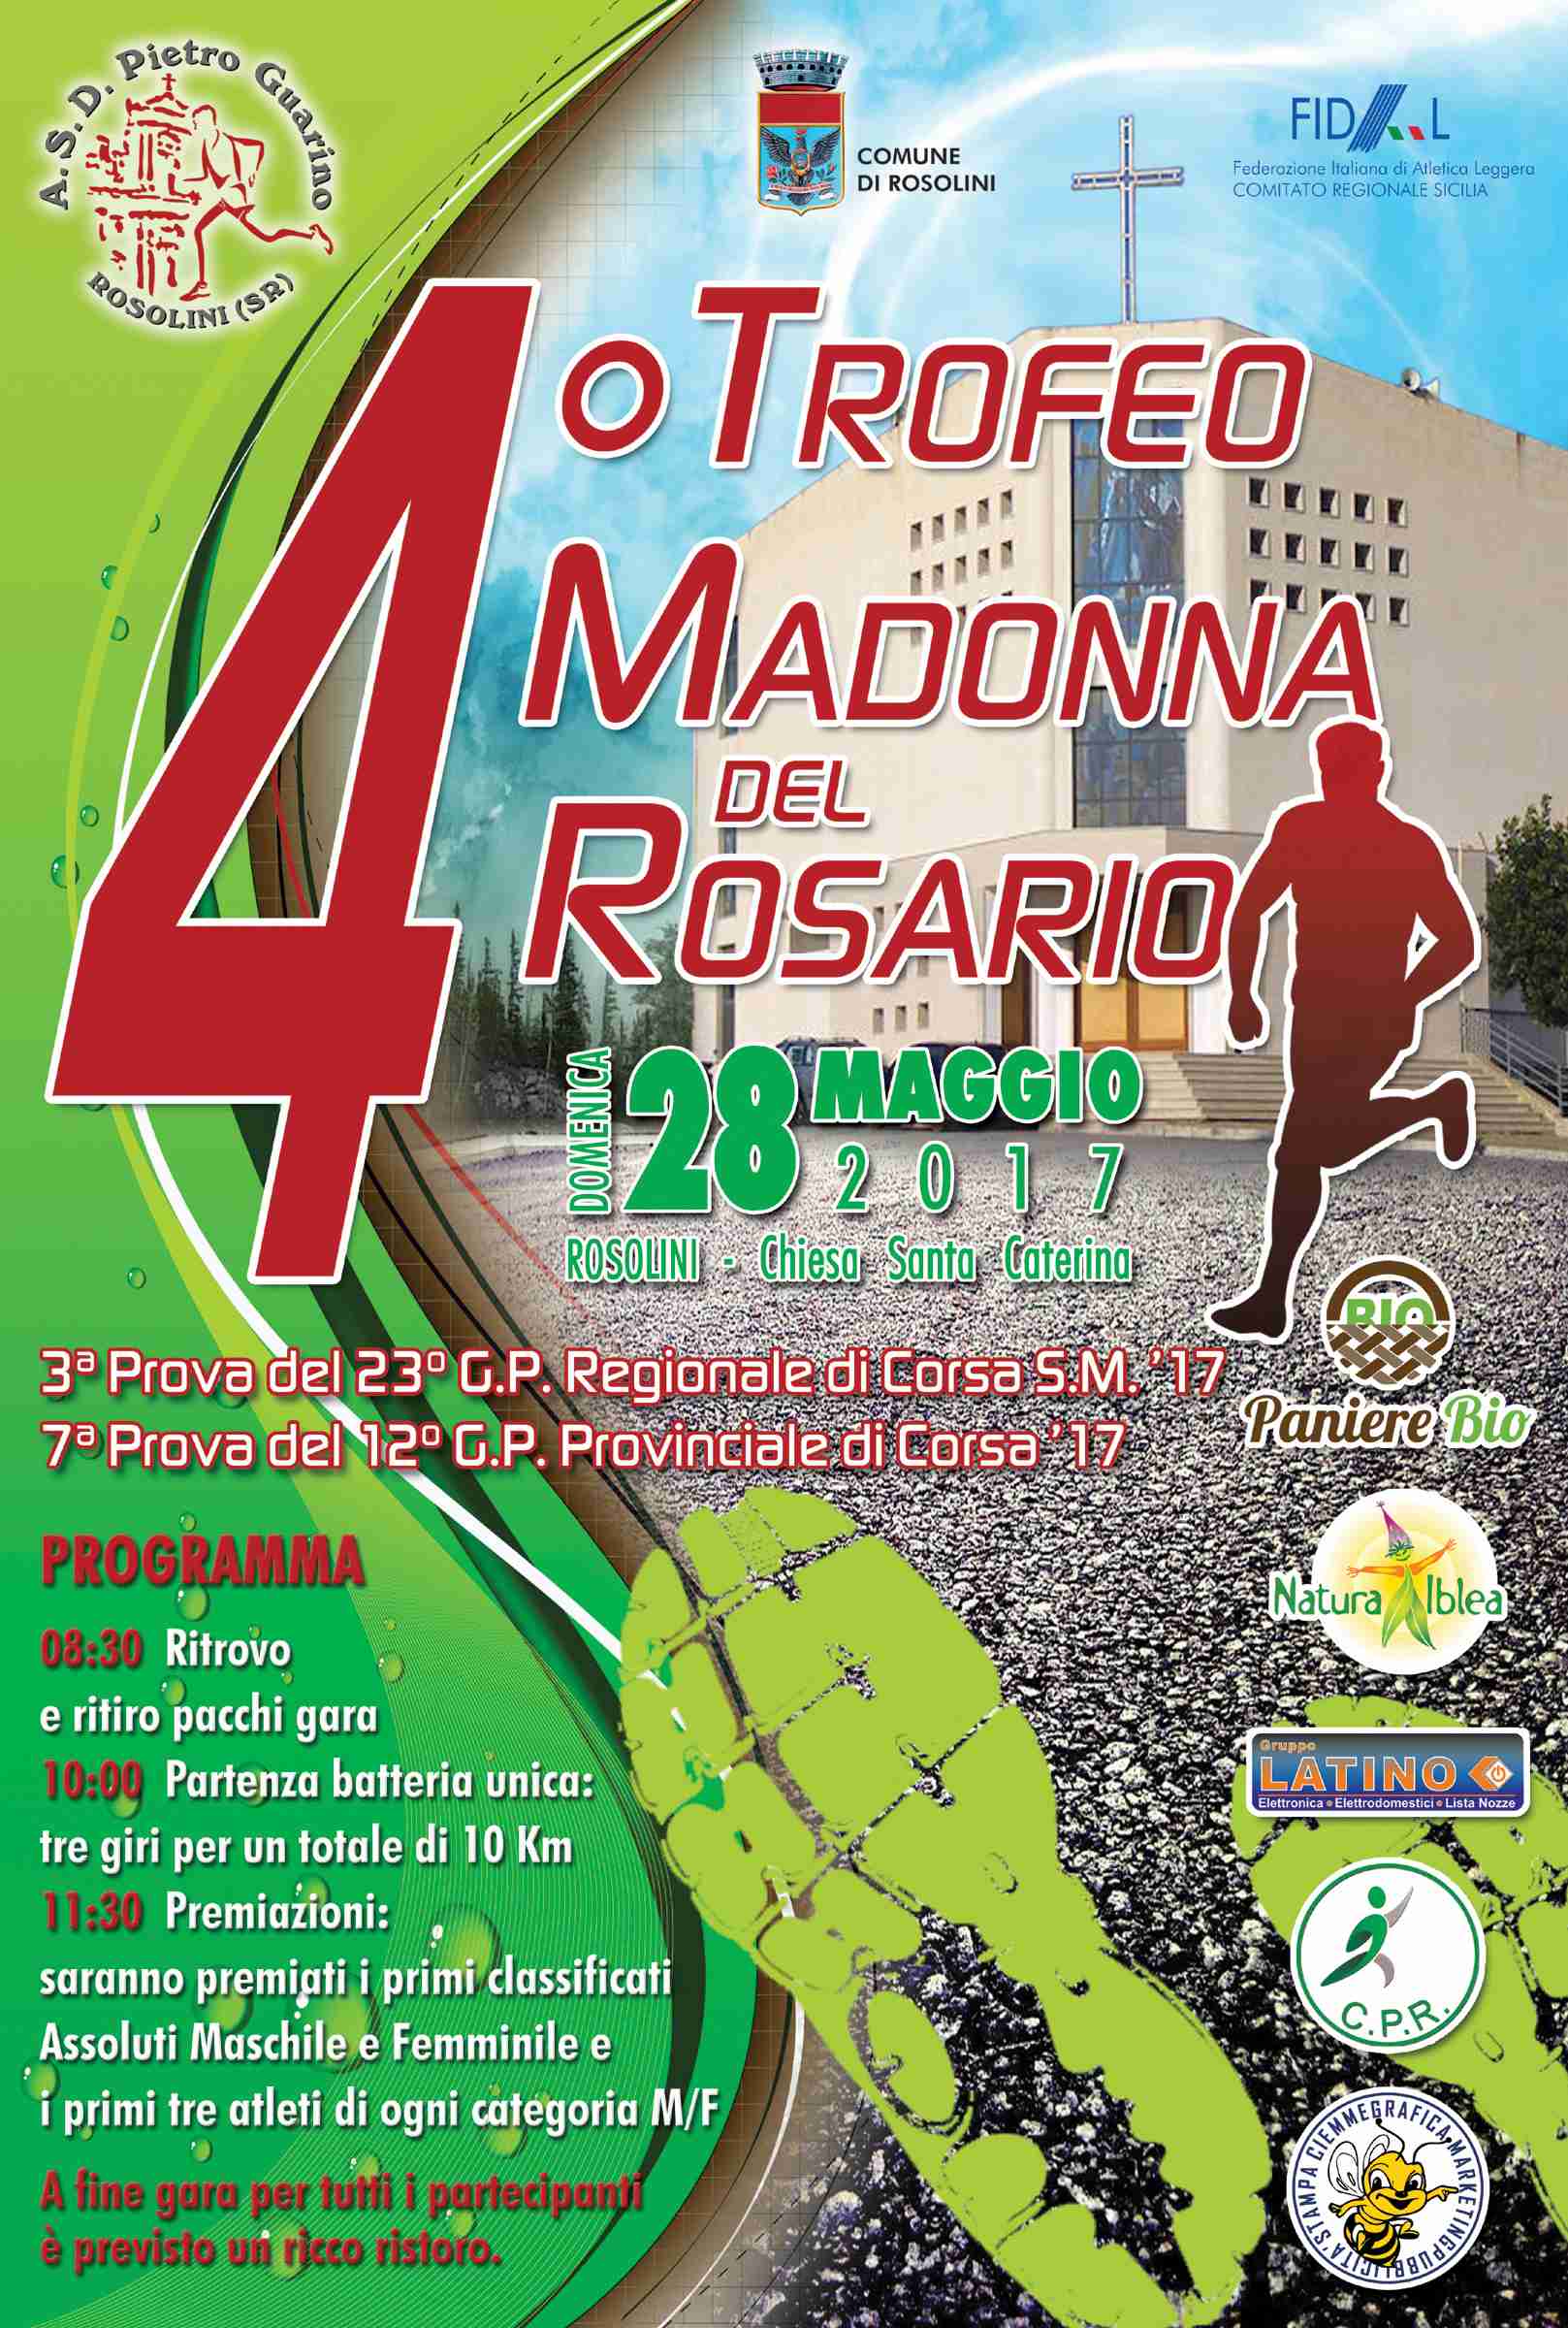 600 podisti pronti ad “invadere” Rosolini al “4° Trofeo Madonna del Rosario”